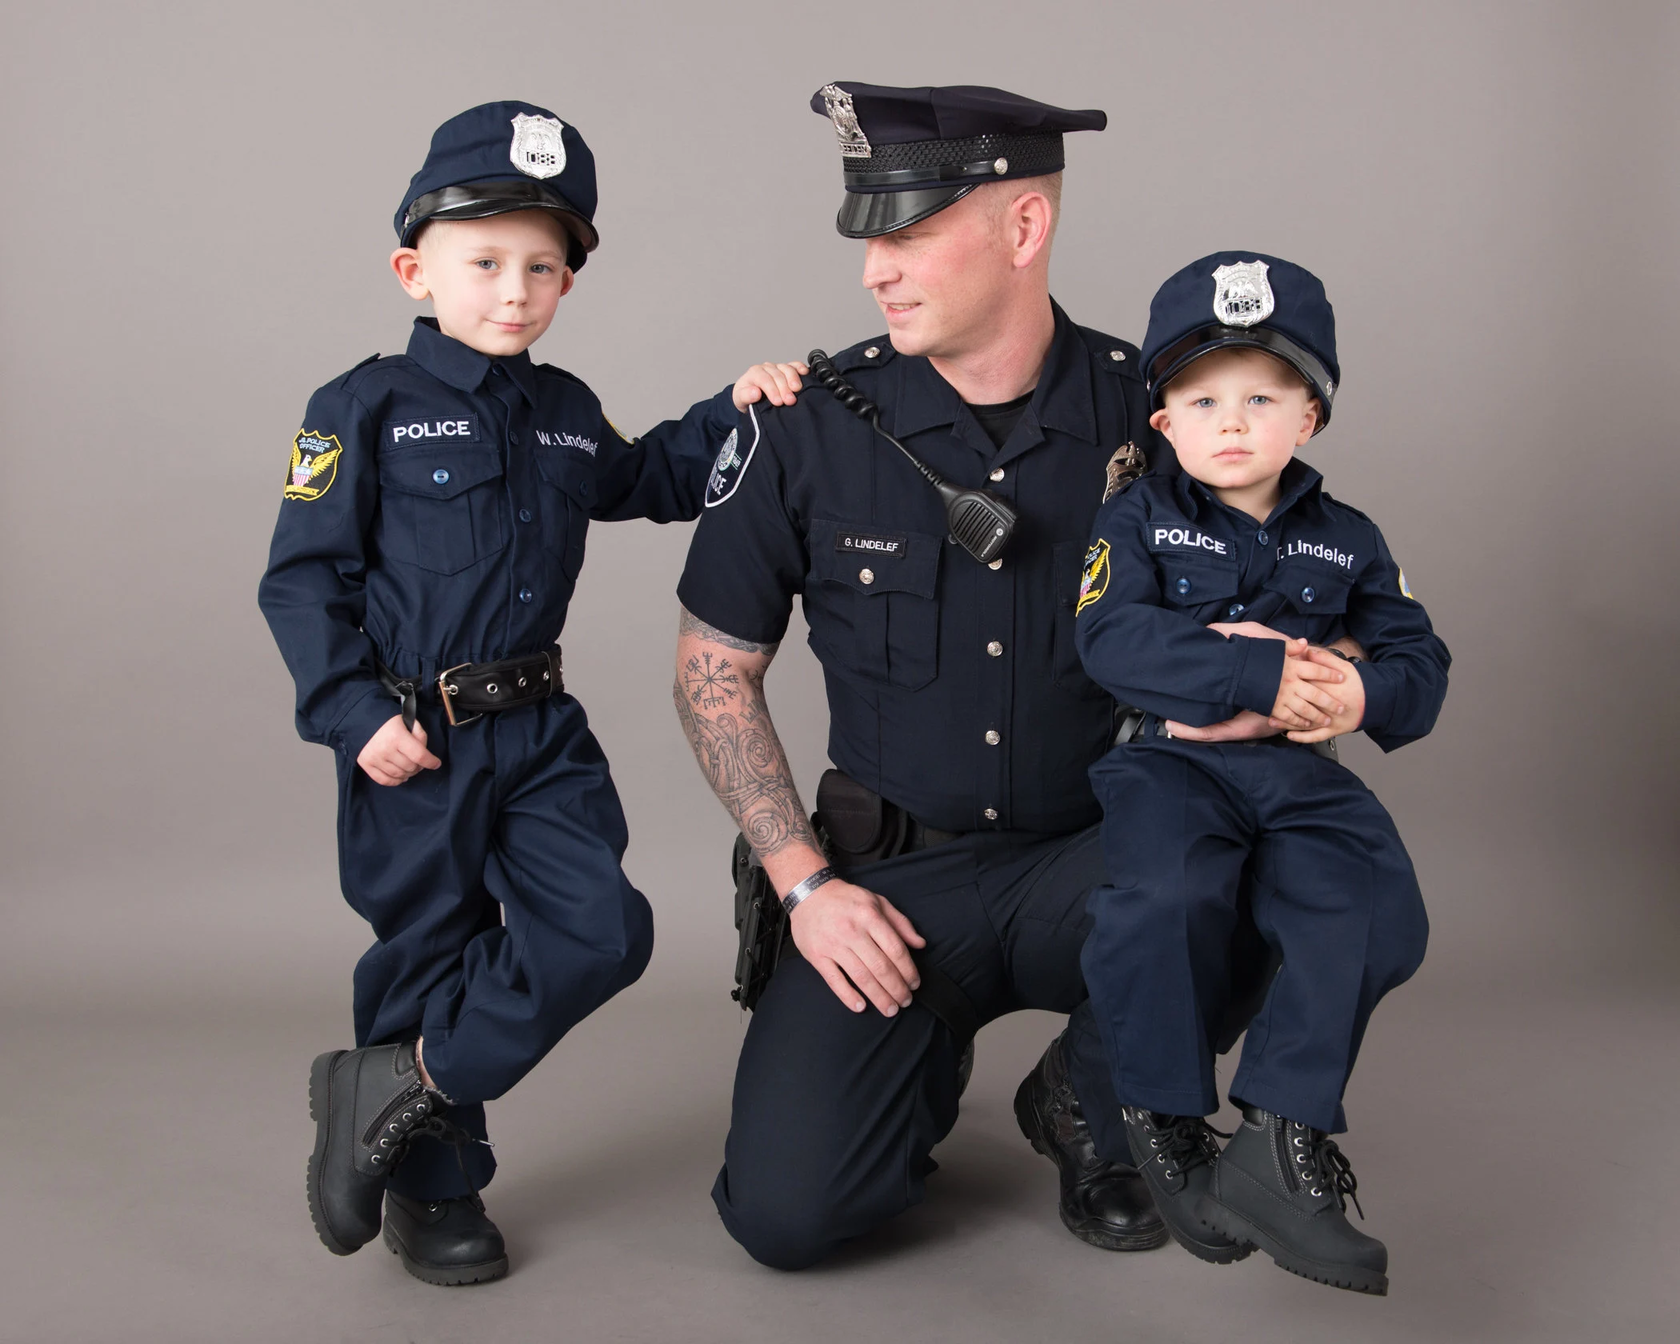 Police child. Форма полиции. Полицейская форма для новорожденных детей. Форма морская полиция дети. Police Officer Kids.